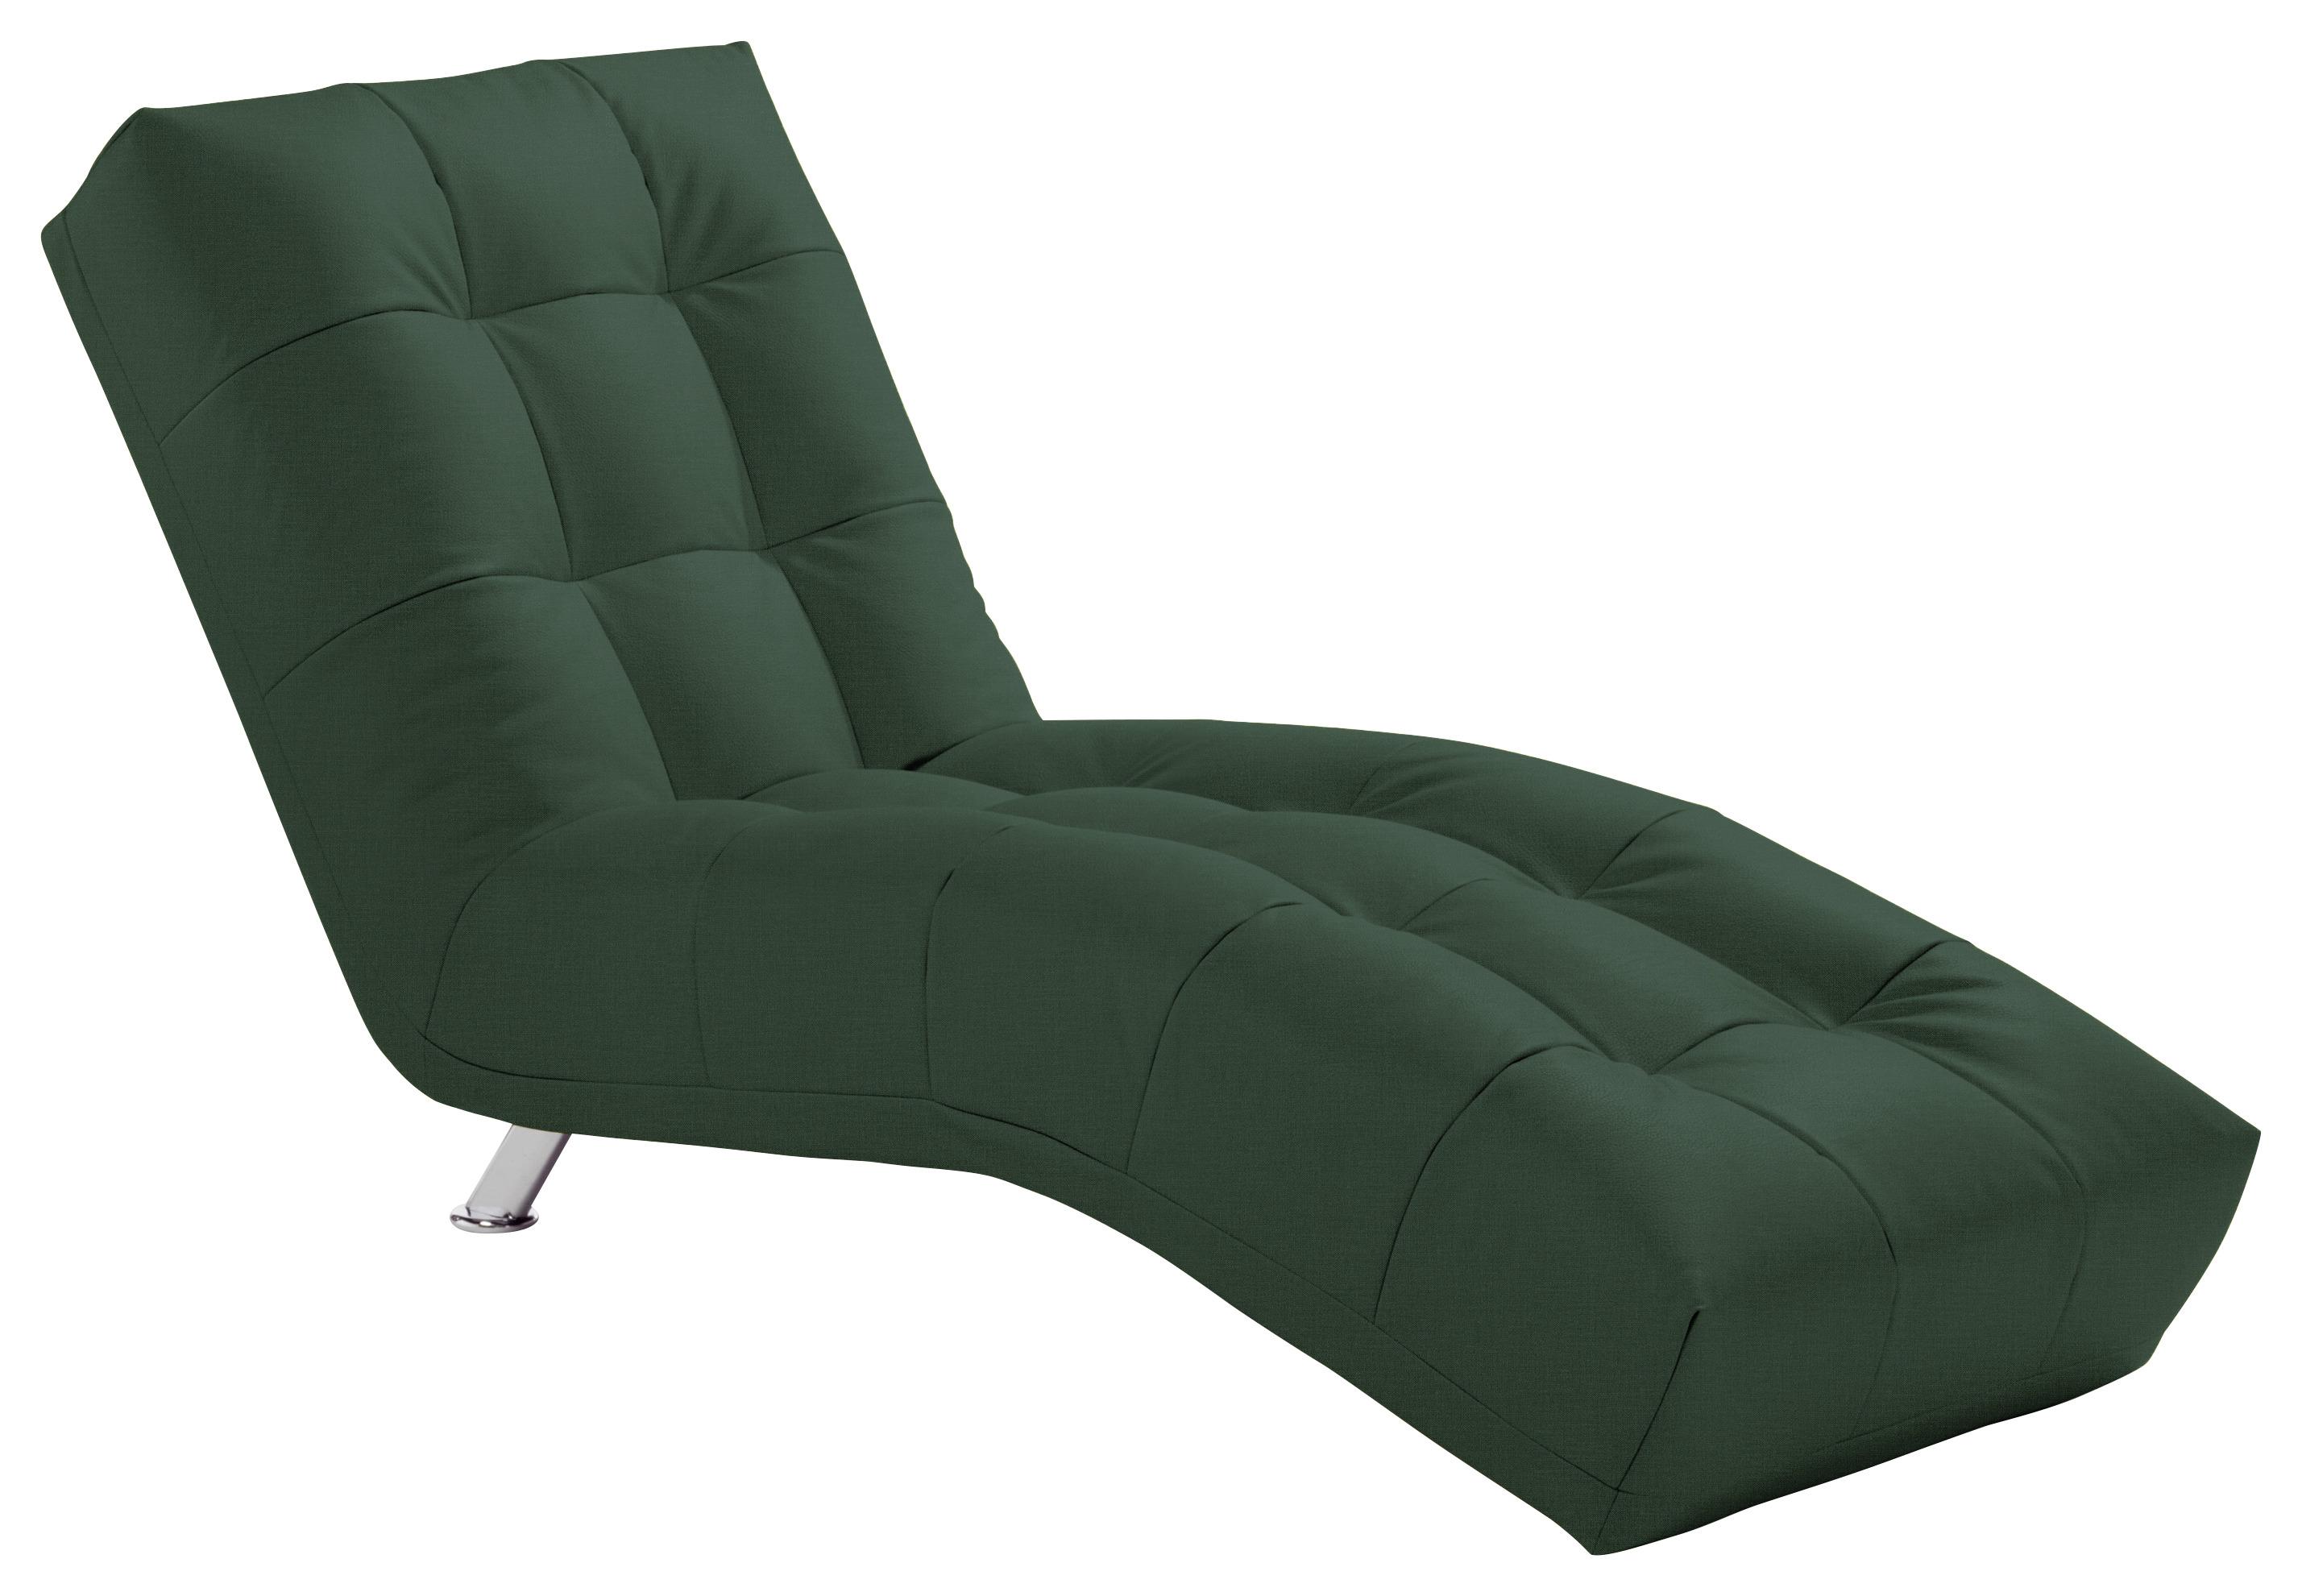 Relaxační Lehátko Isabella, Tmavě Zelené - barvy chromu/tmavě zelená, Moderní, kov/textil (68/88/164cm)